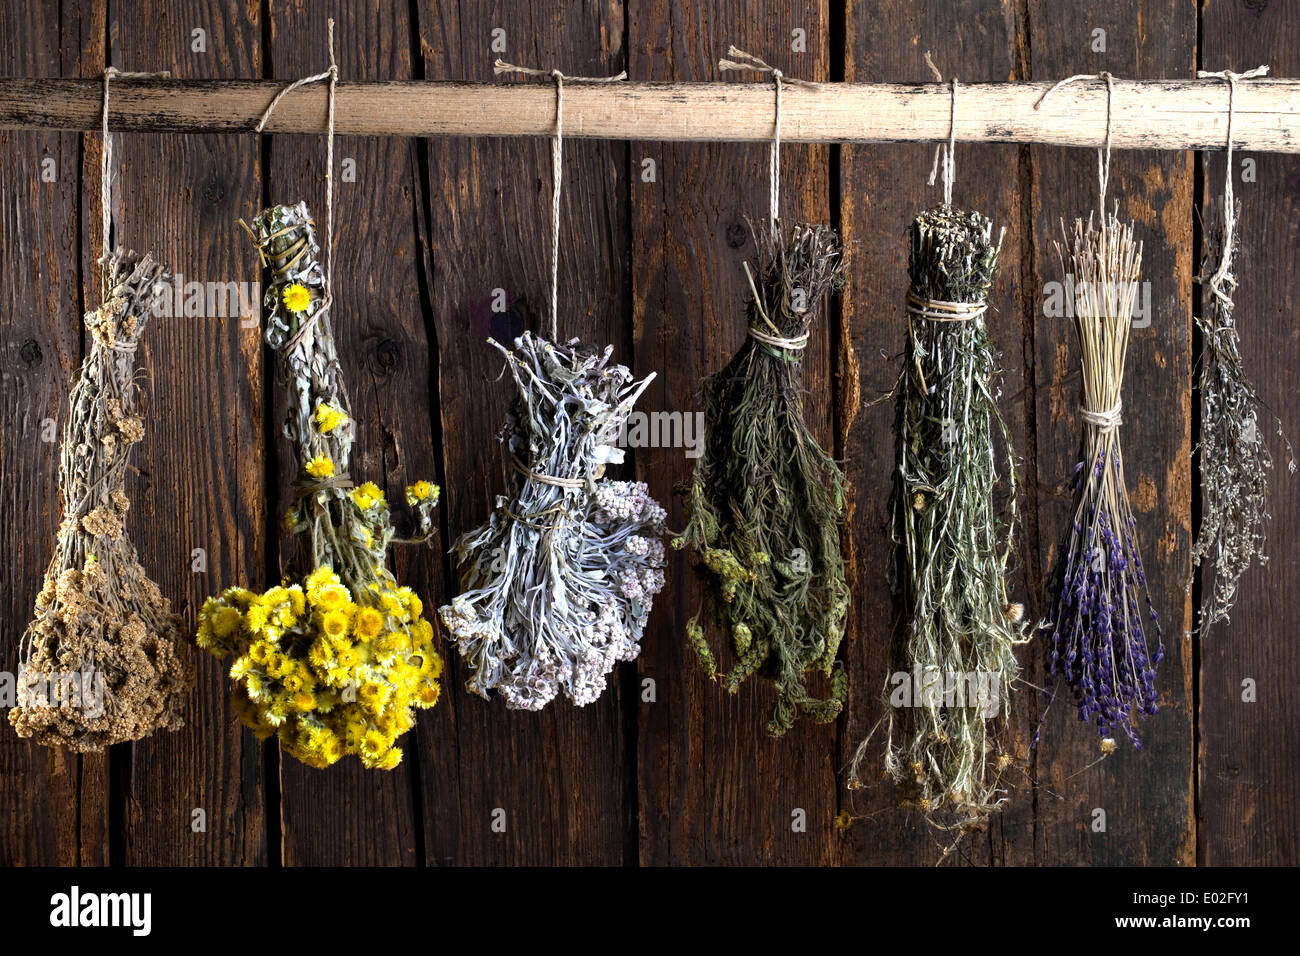 Différents bouquets de fines herbes, hung out to dry Banque D'Images